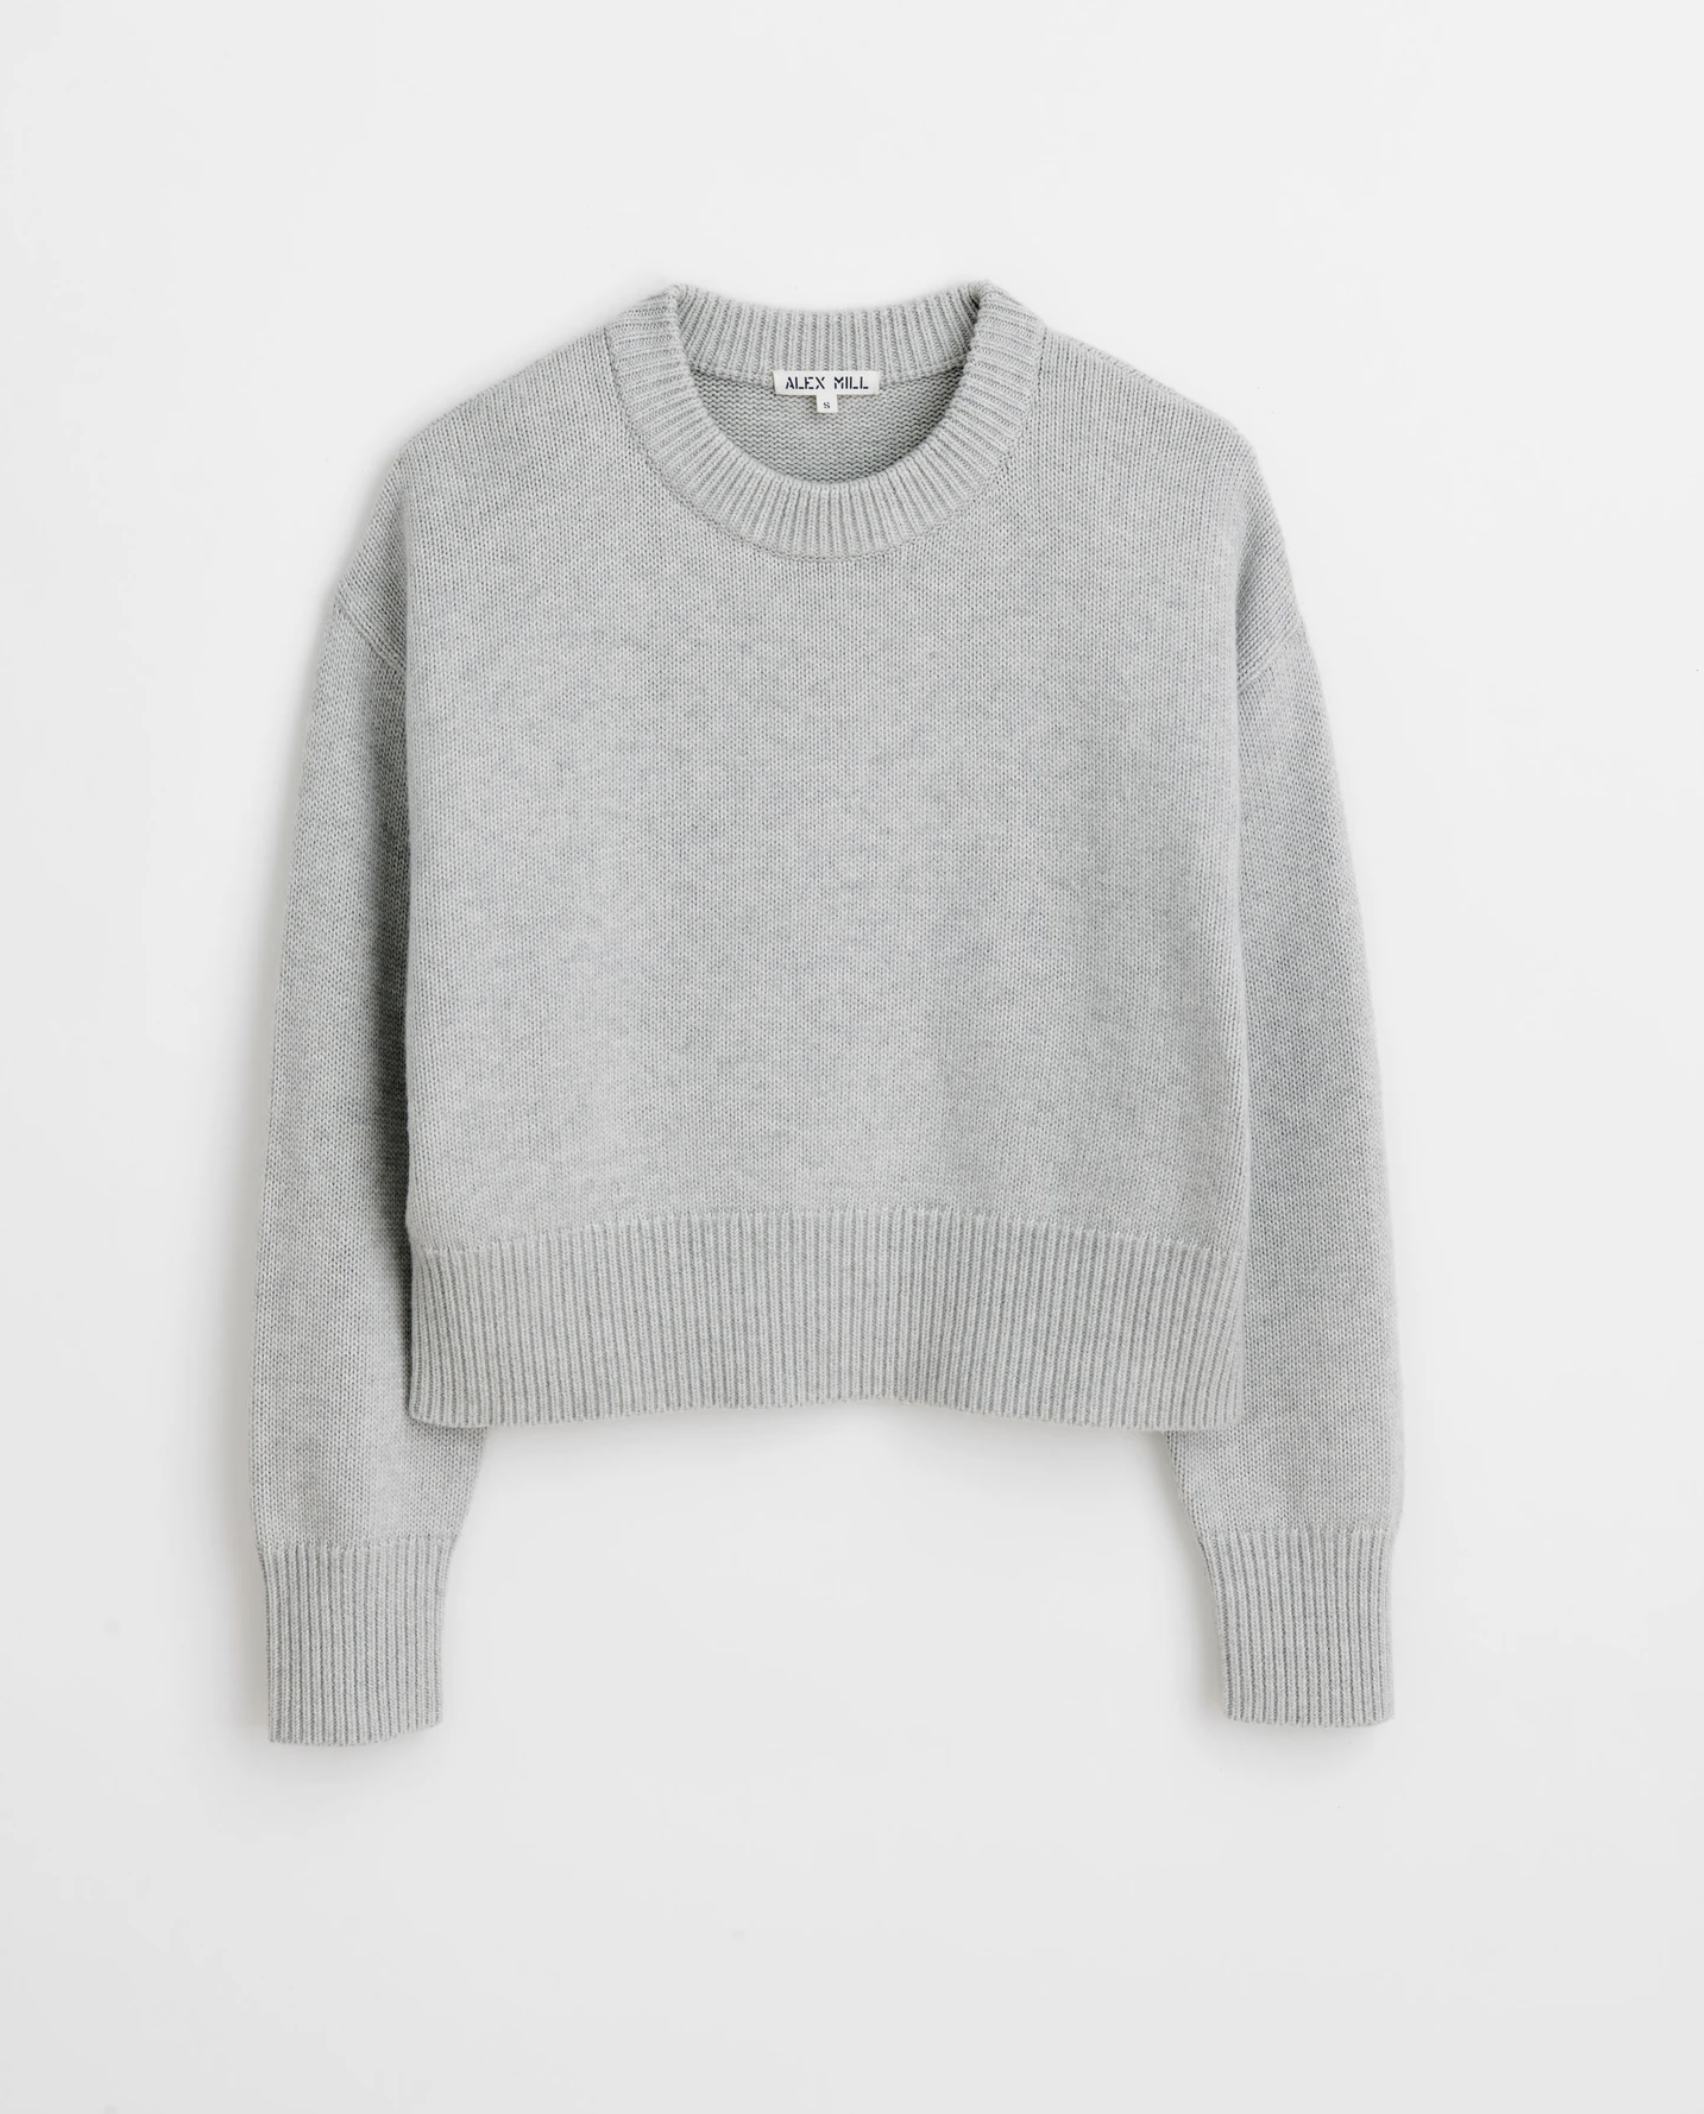 Alex Mill Sweater $135